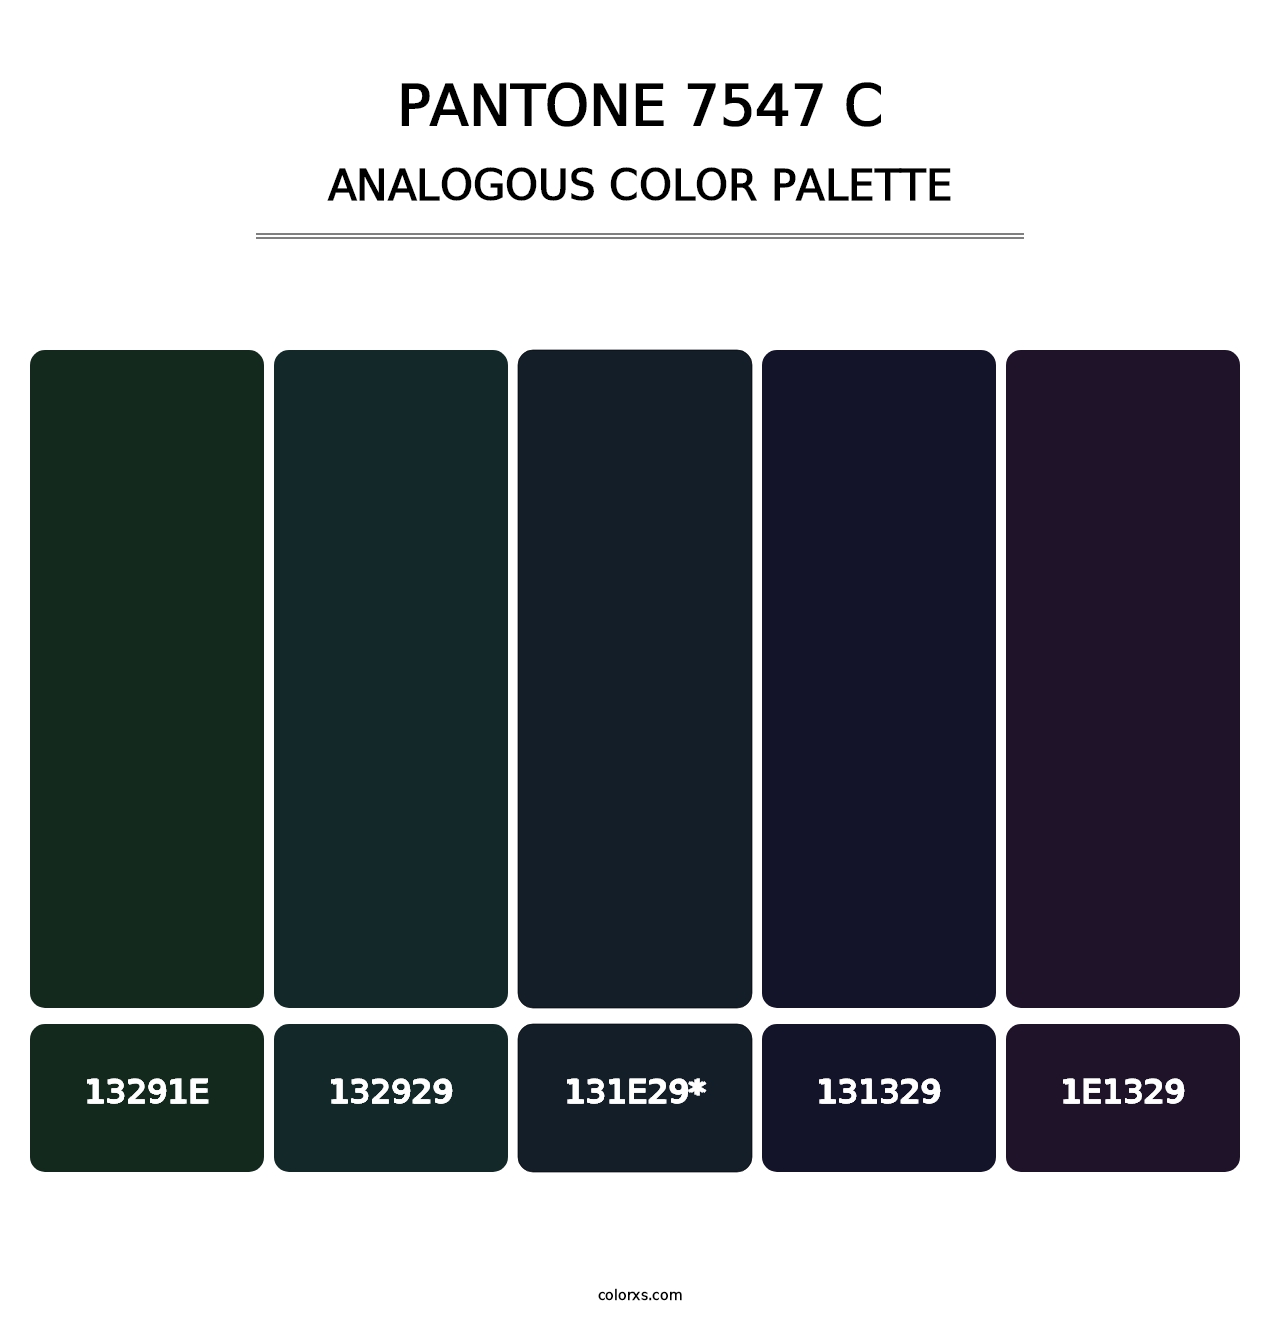 PANTONE 7547 C - Analogous Color Palette